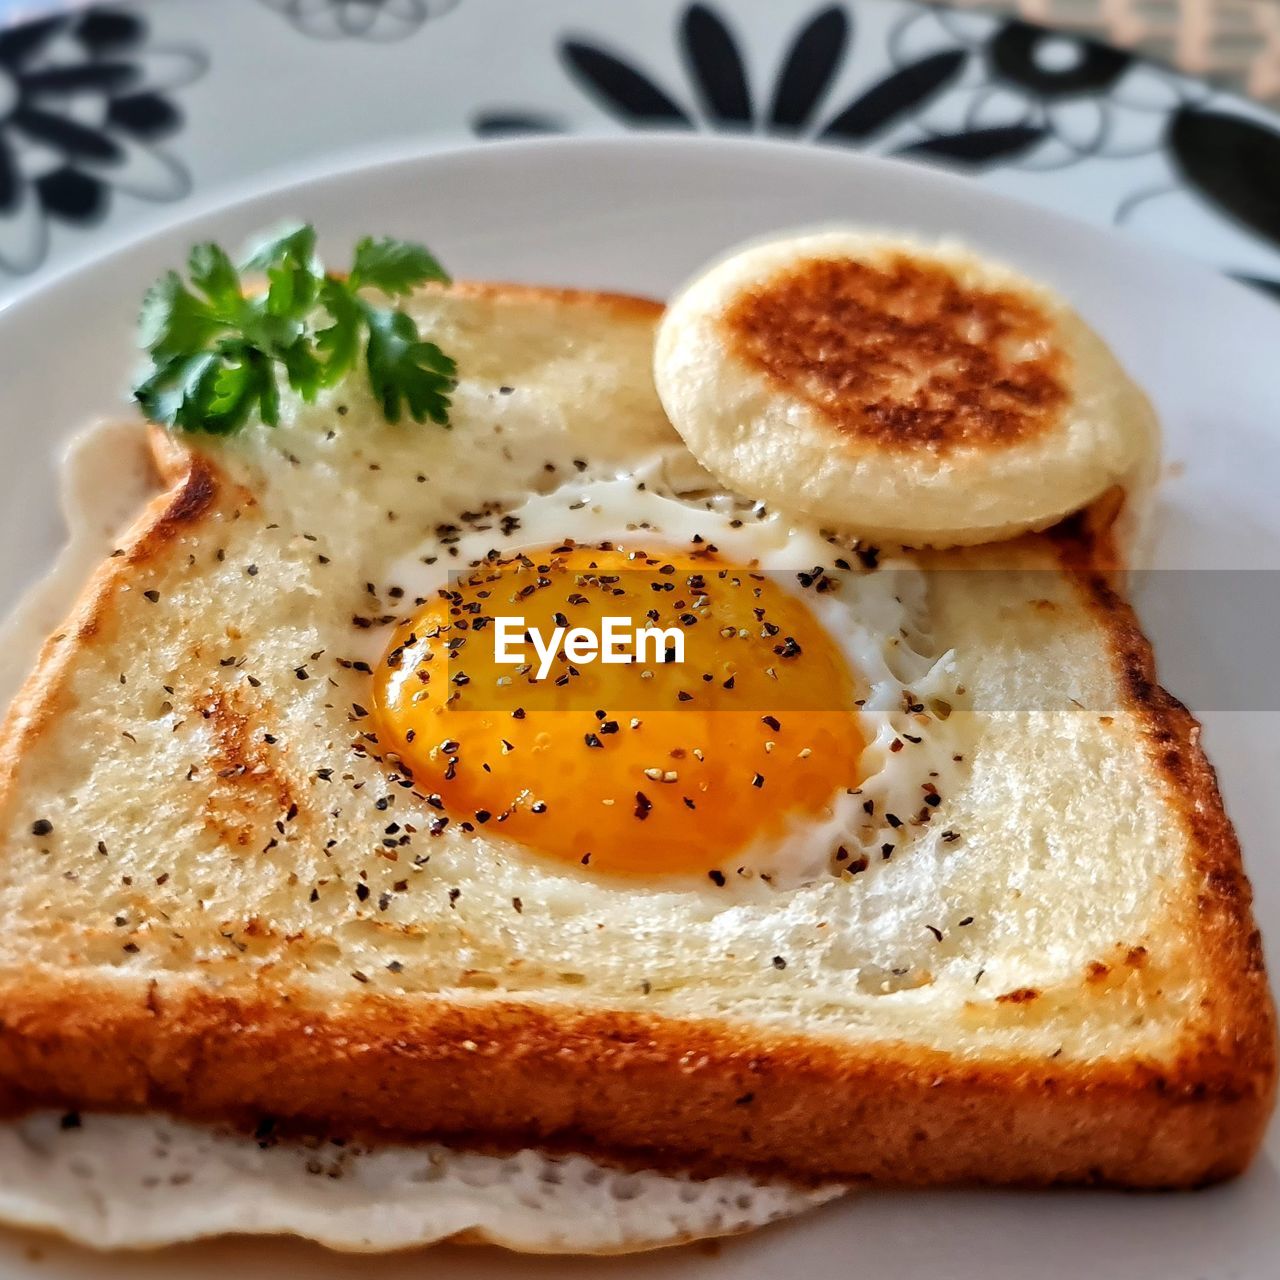 Egg in a hole breakfast